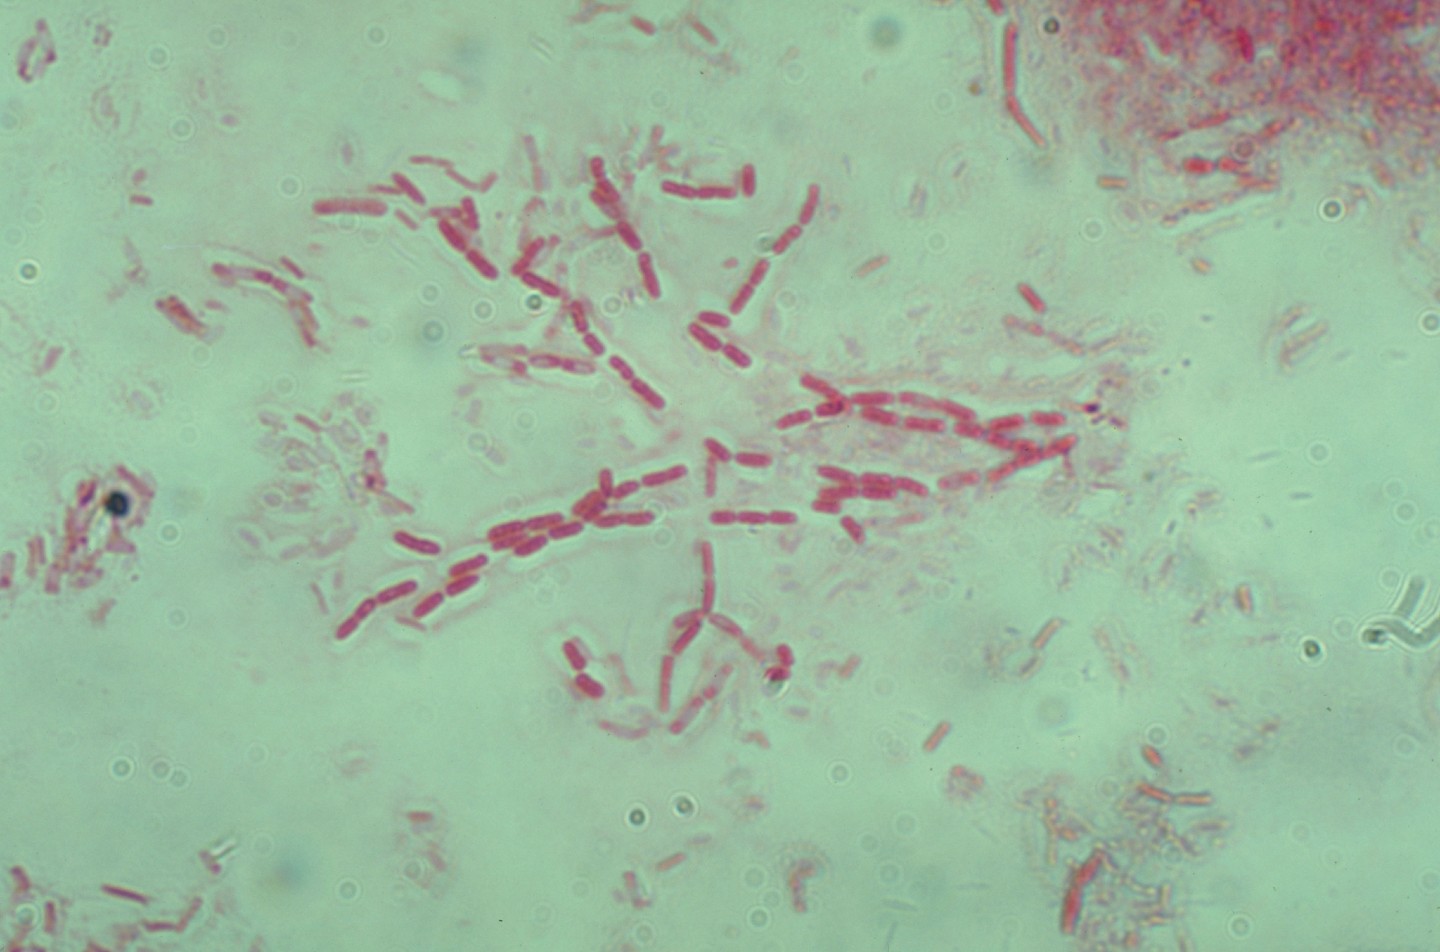 bacillus subtilis (rods)